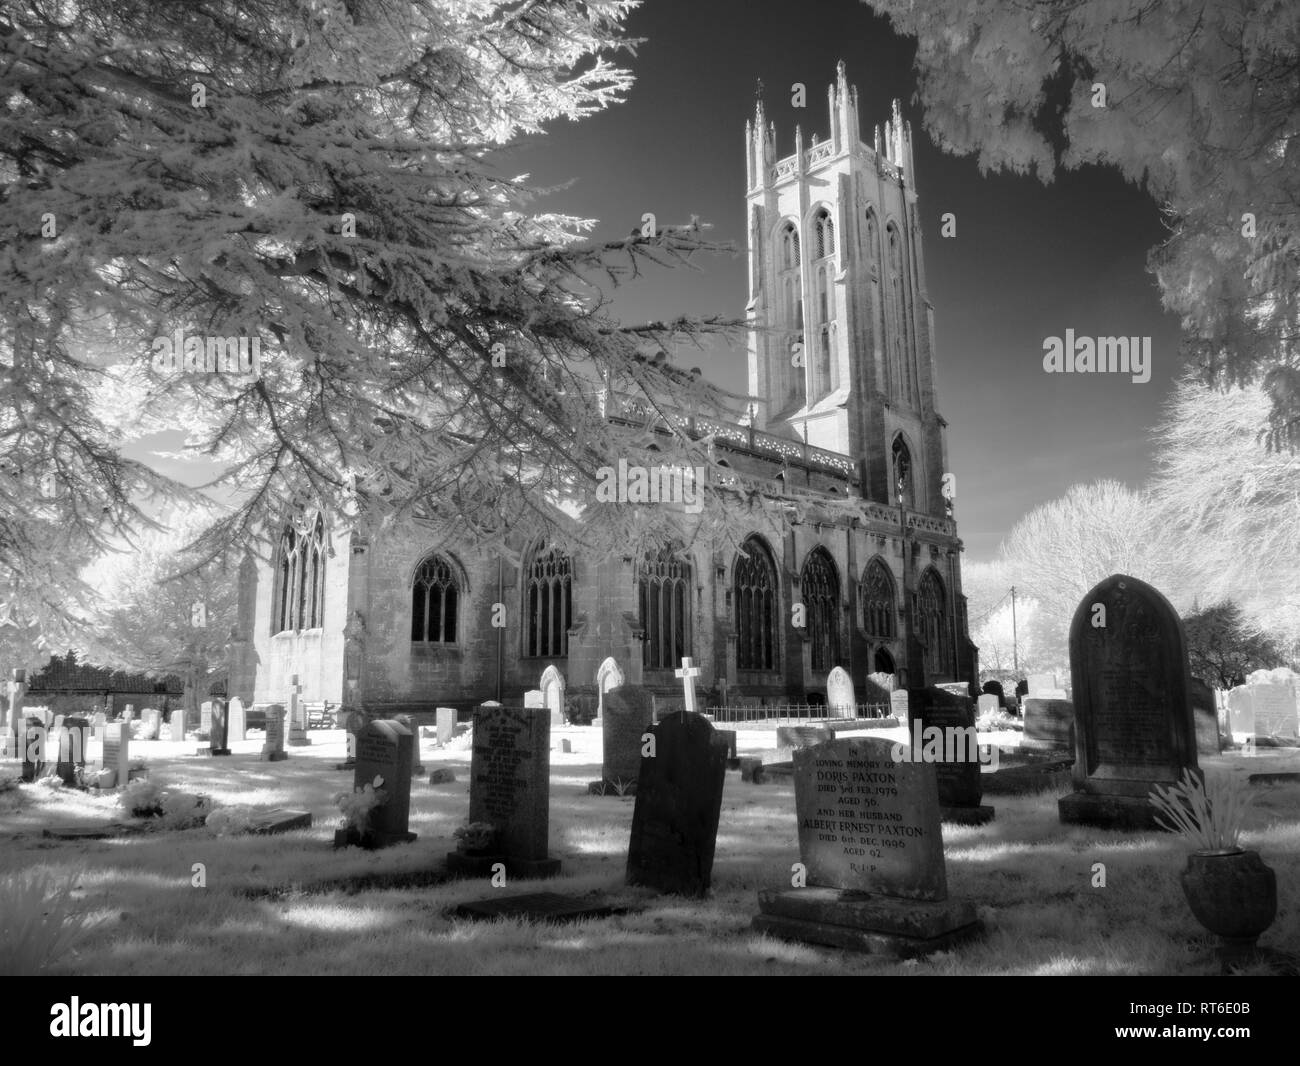 Monochrome infrarouge de l'église All Saints dans le North Somerset Village de Wrington, Angleterre. Banque D'Images